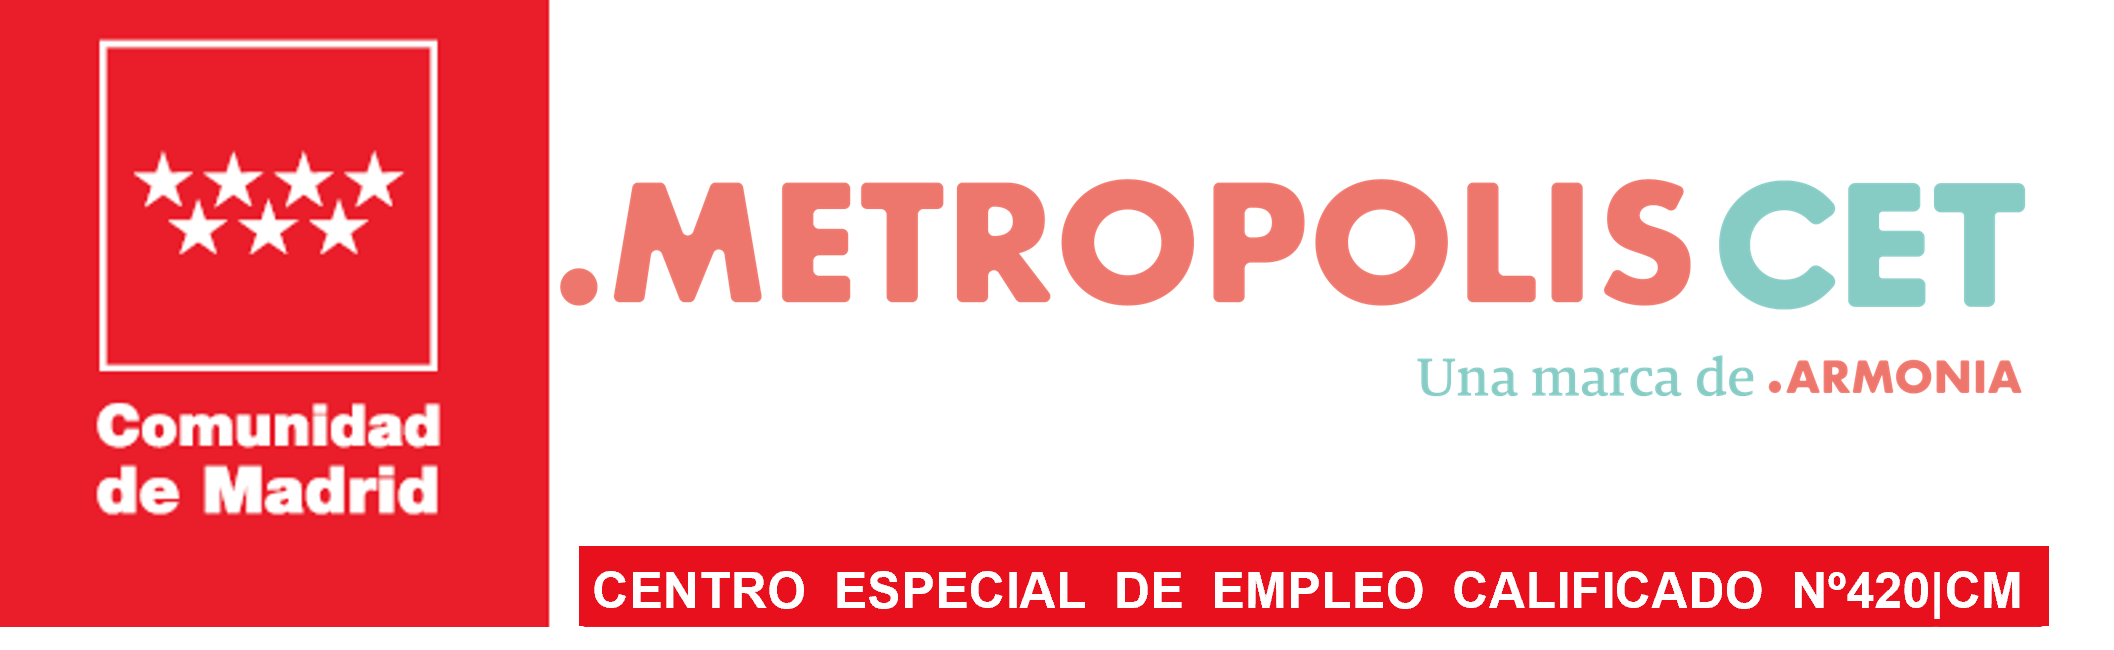 Armonia certificación Metropolis CET 